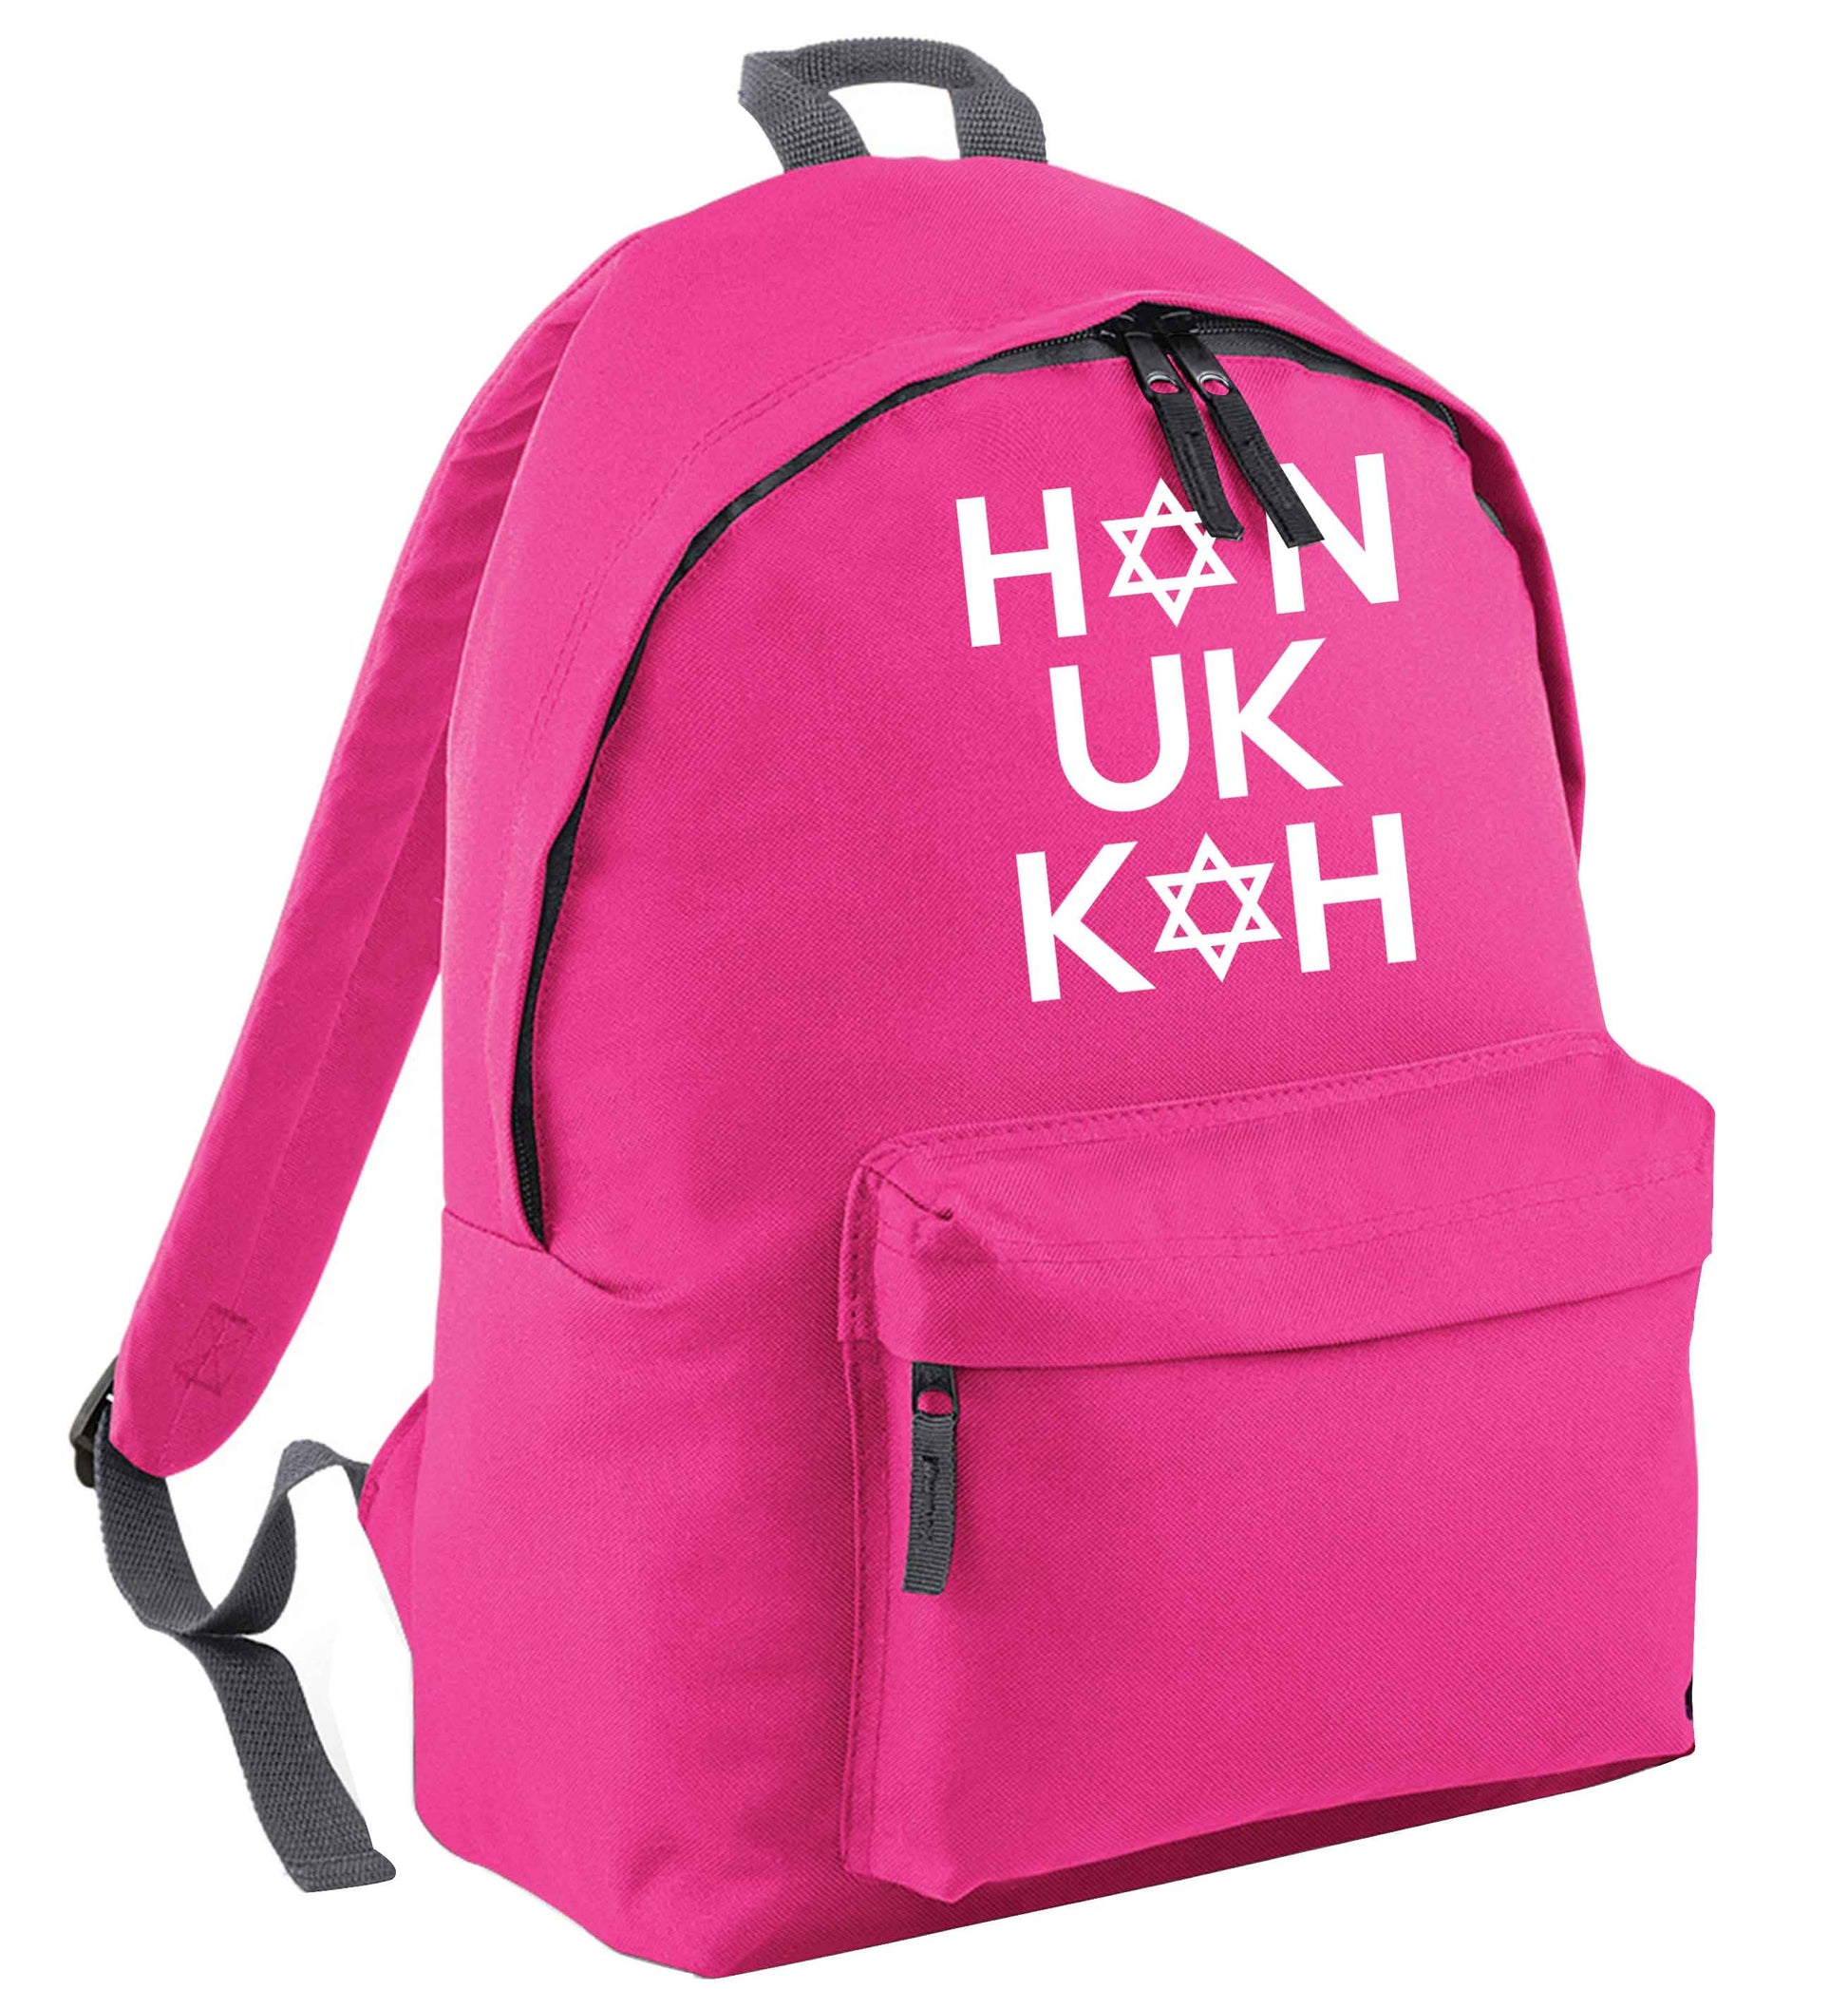 Han uk kah  Hanukkah star of david pink adults backpack